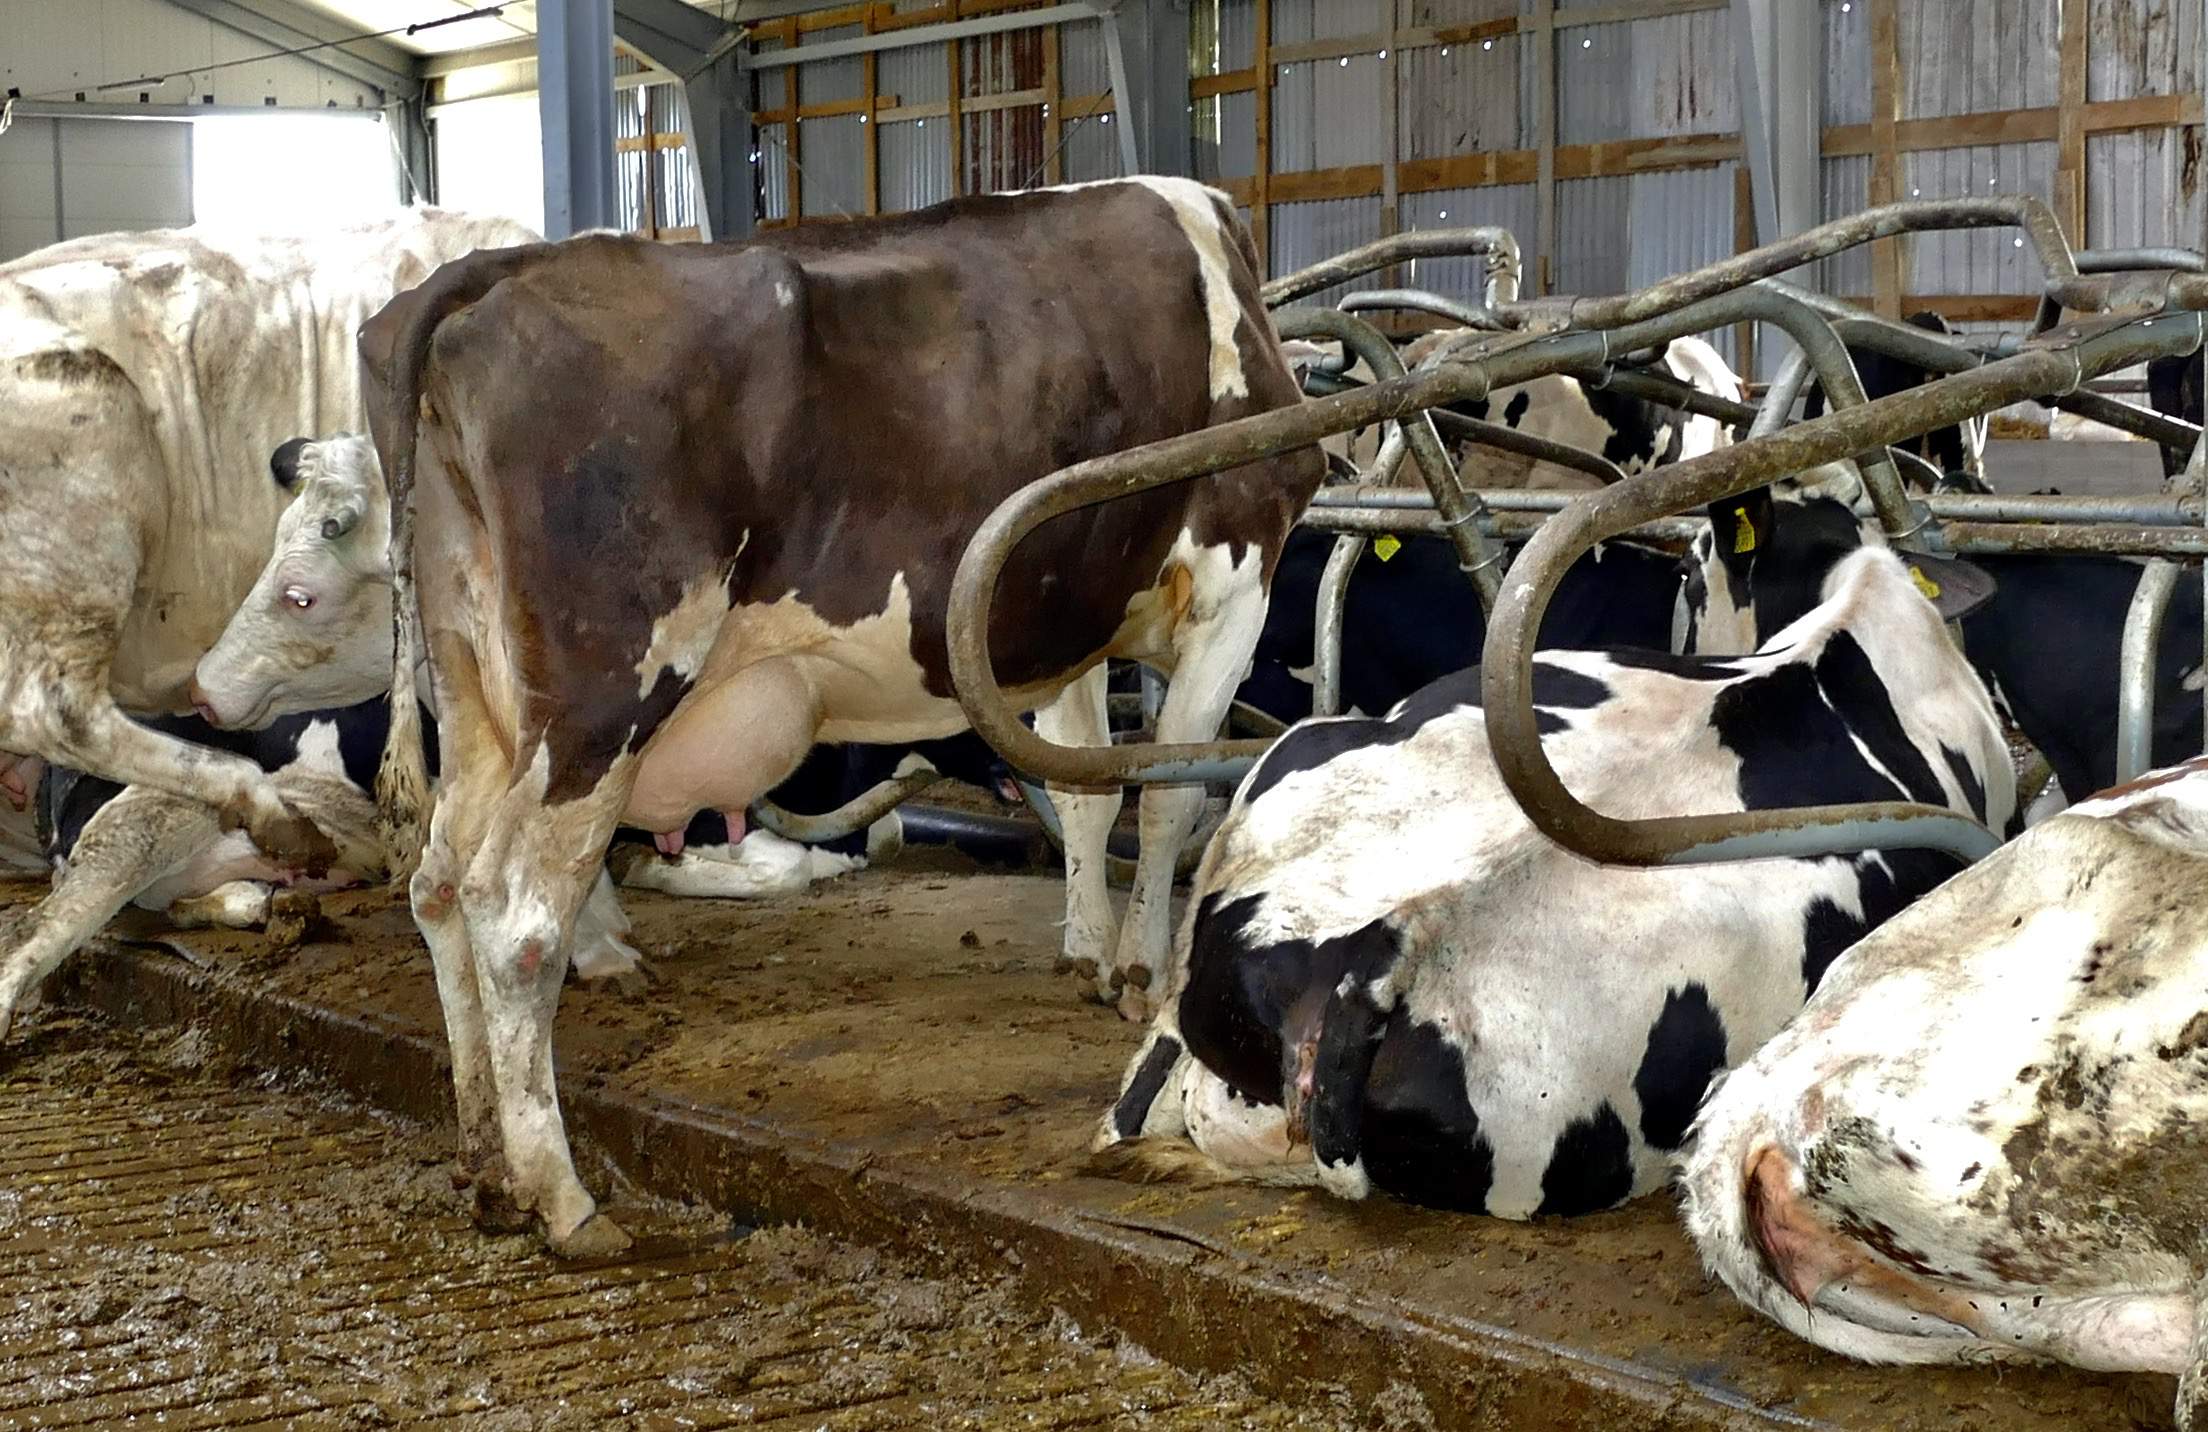 Materace wodne dostosowują się do kształtu ciała krowy, eliminując ryzyko powstawania odleżyn